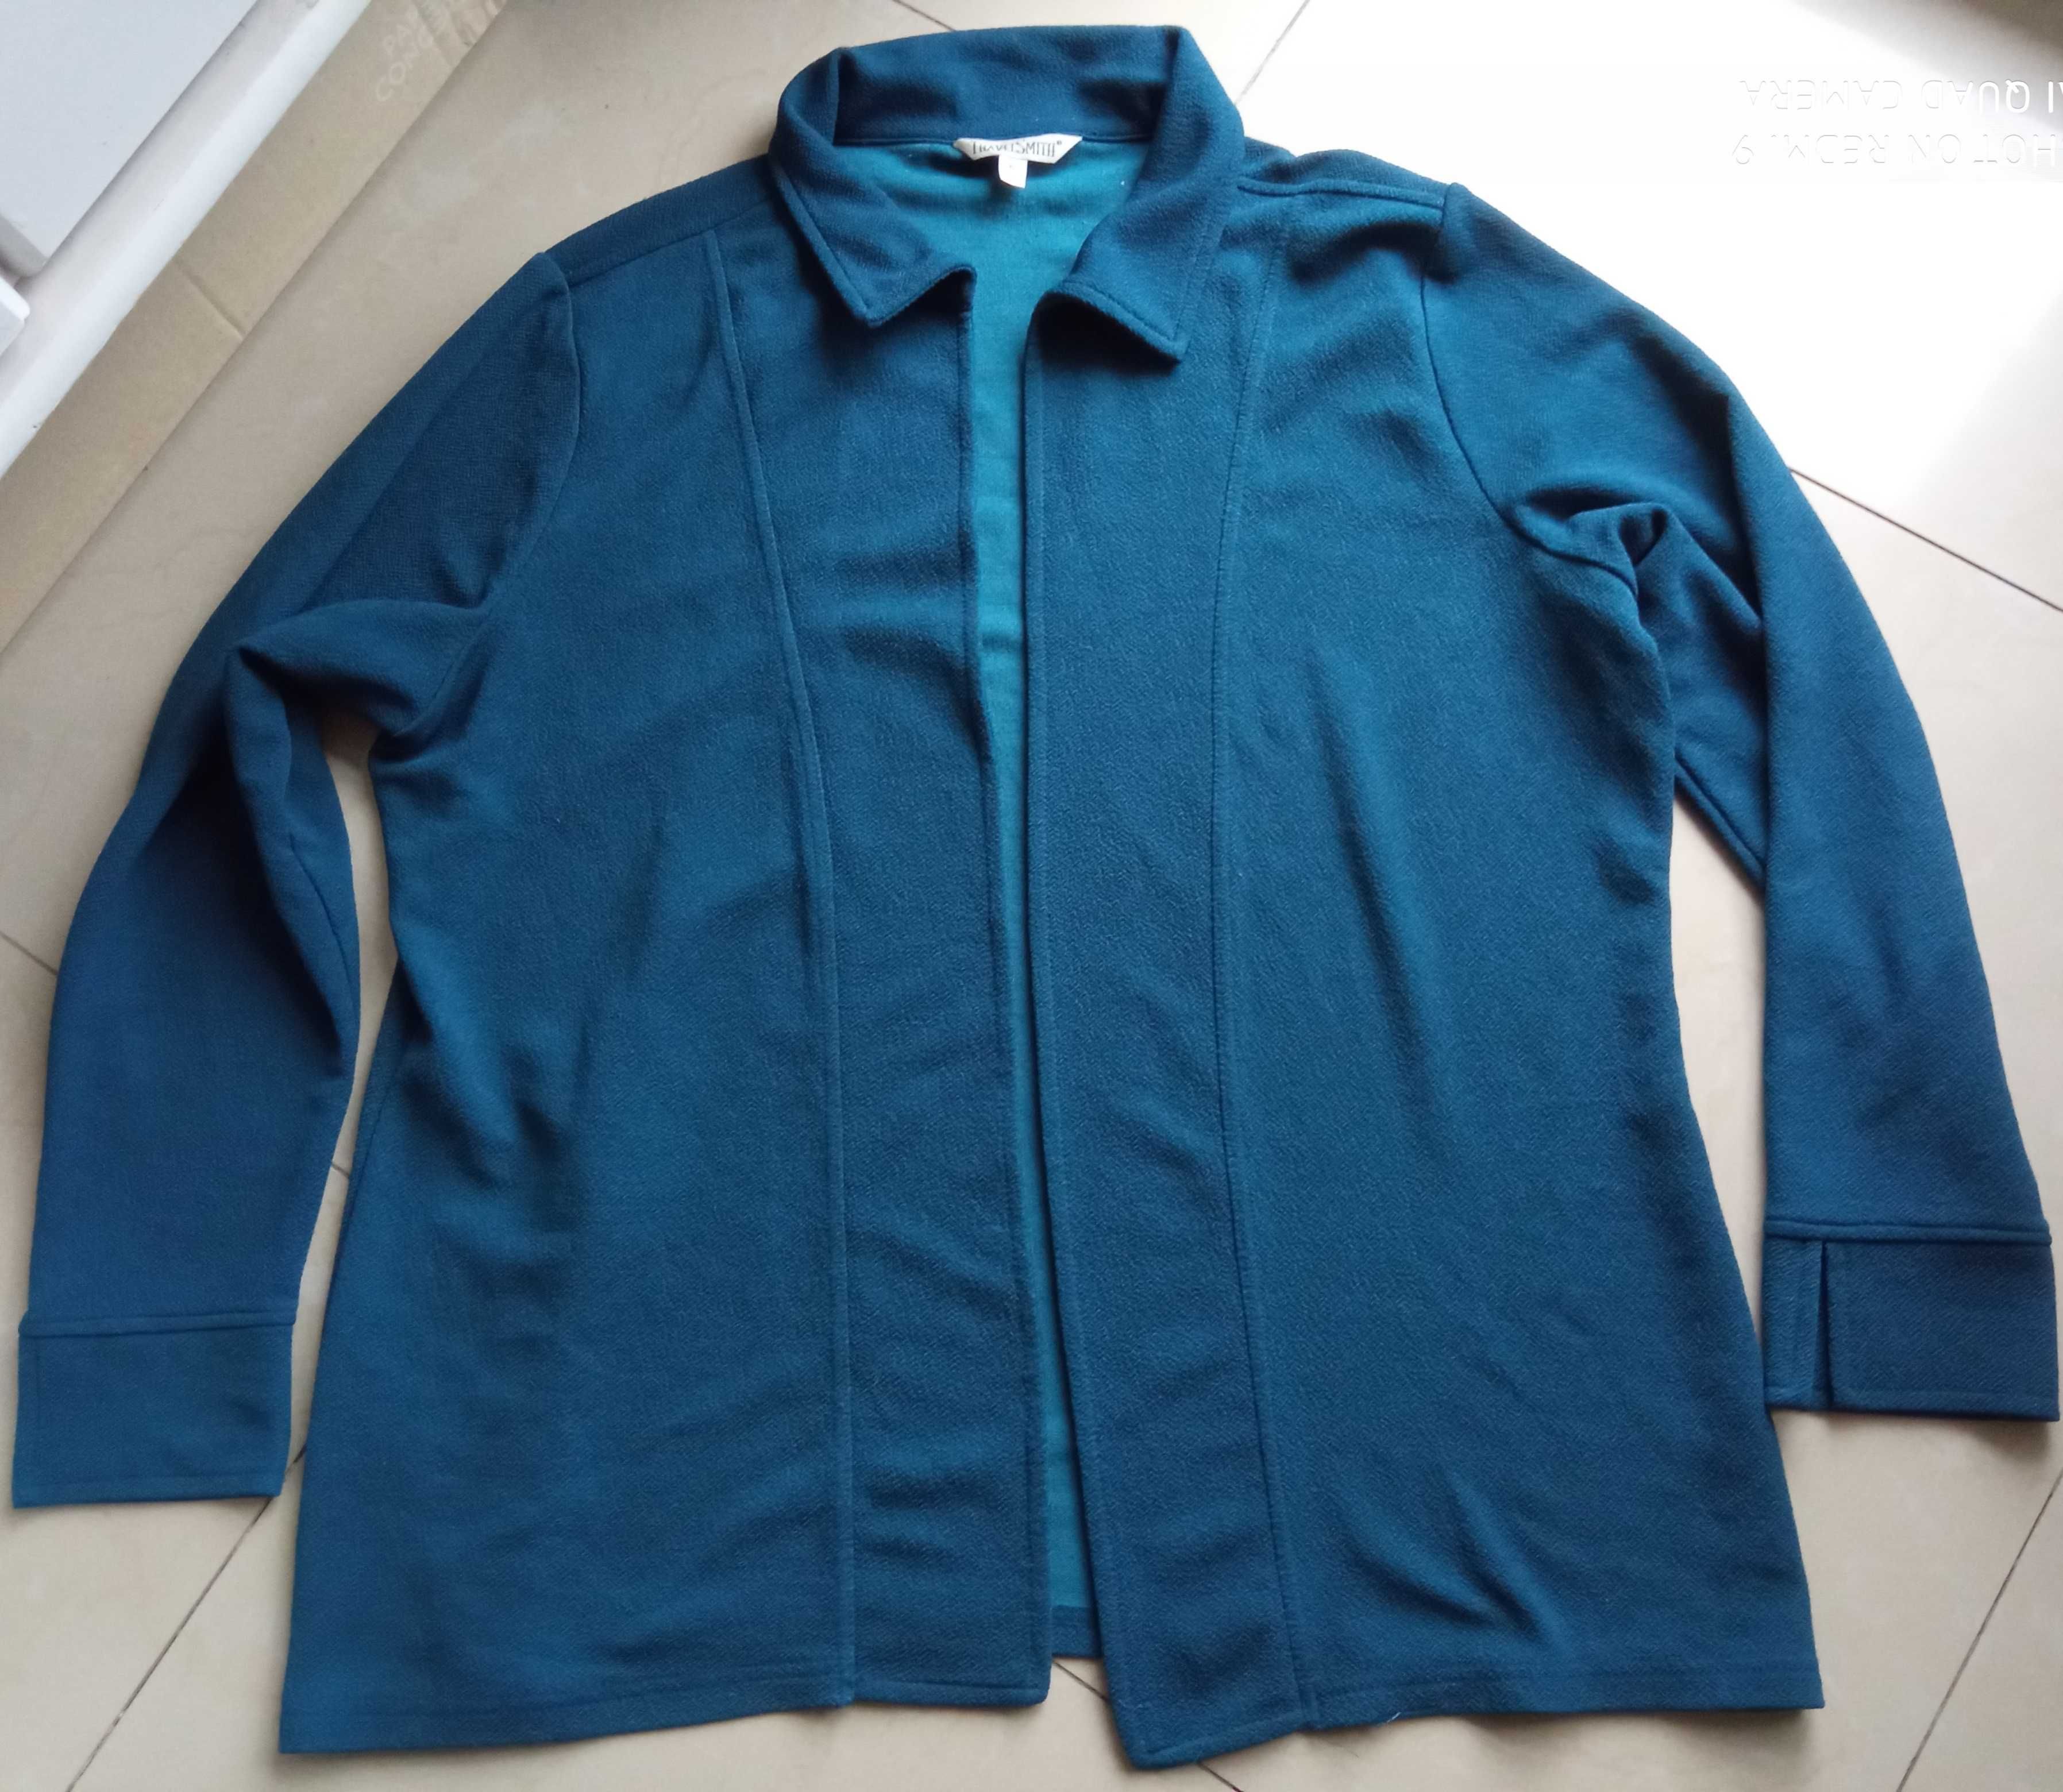 Travel Smith XL narzutka bluzka ciemny turkus zieleń 120cm pachy